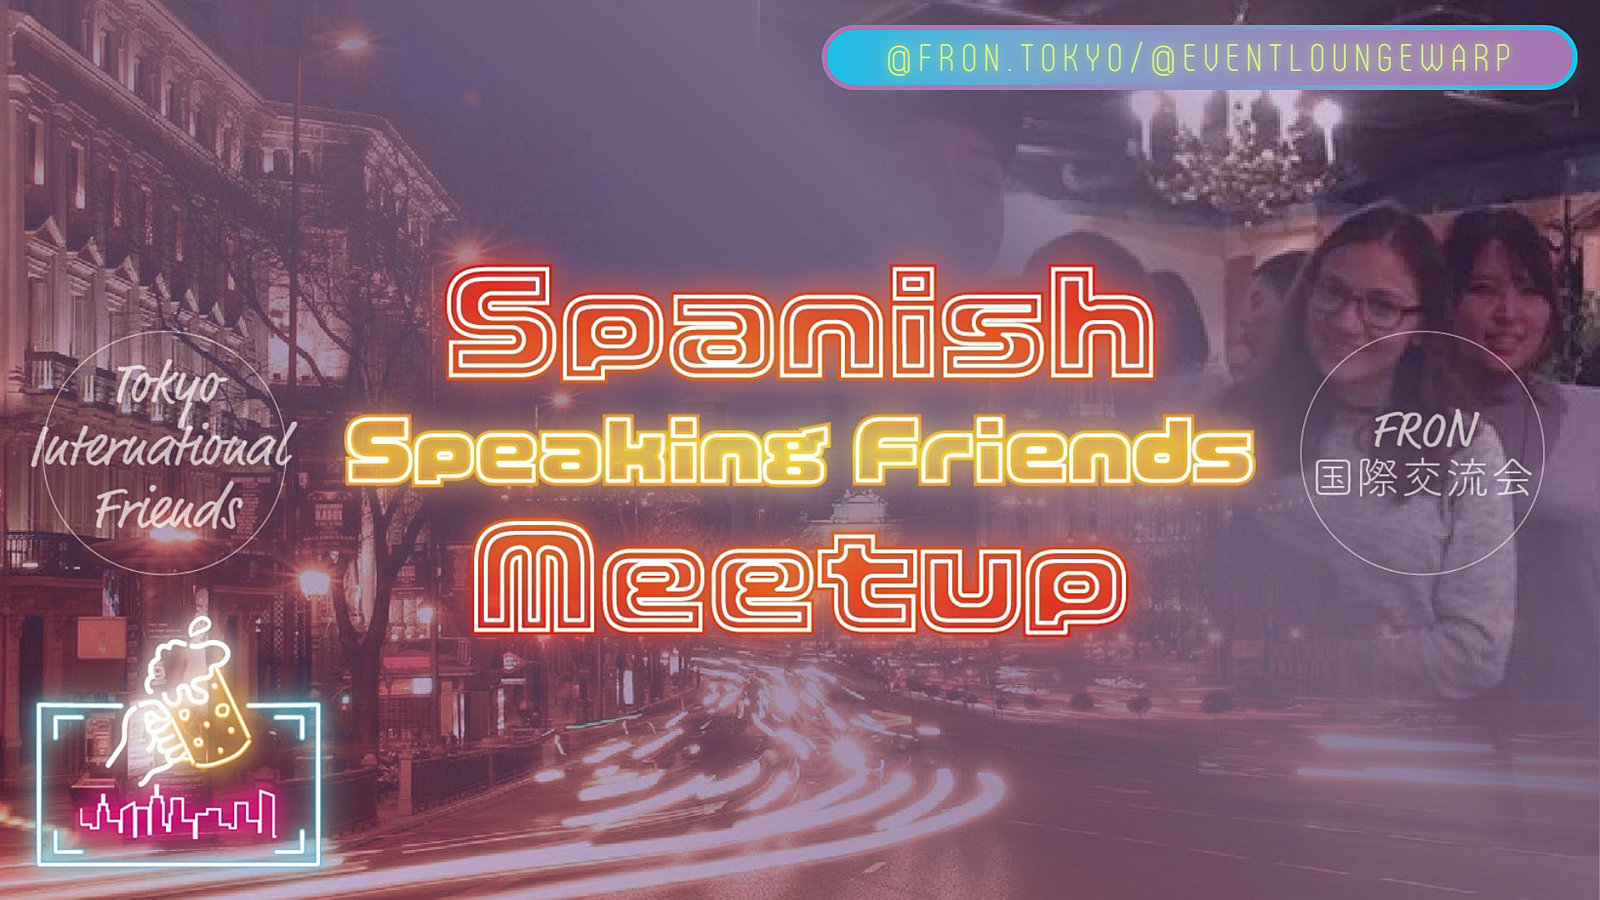 3/31(日)14:00~ スペイン語交流会 🇪🇸 Spanish Speaking Friends Meetup☆Domingo 31 de marzo♪